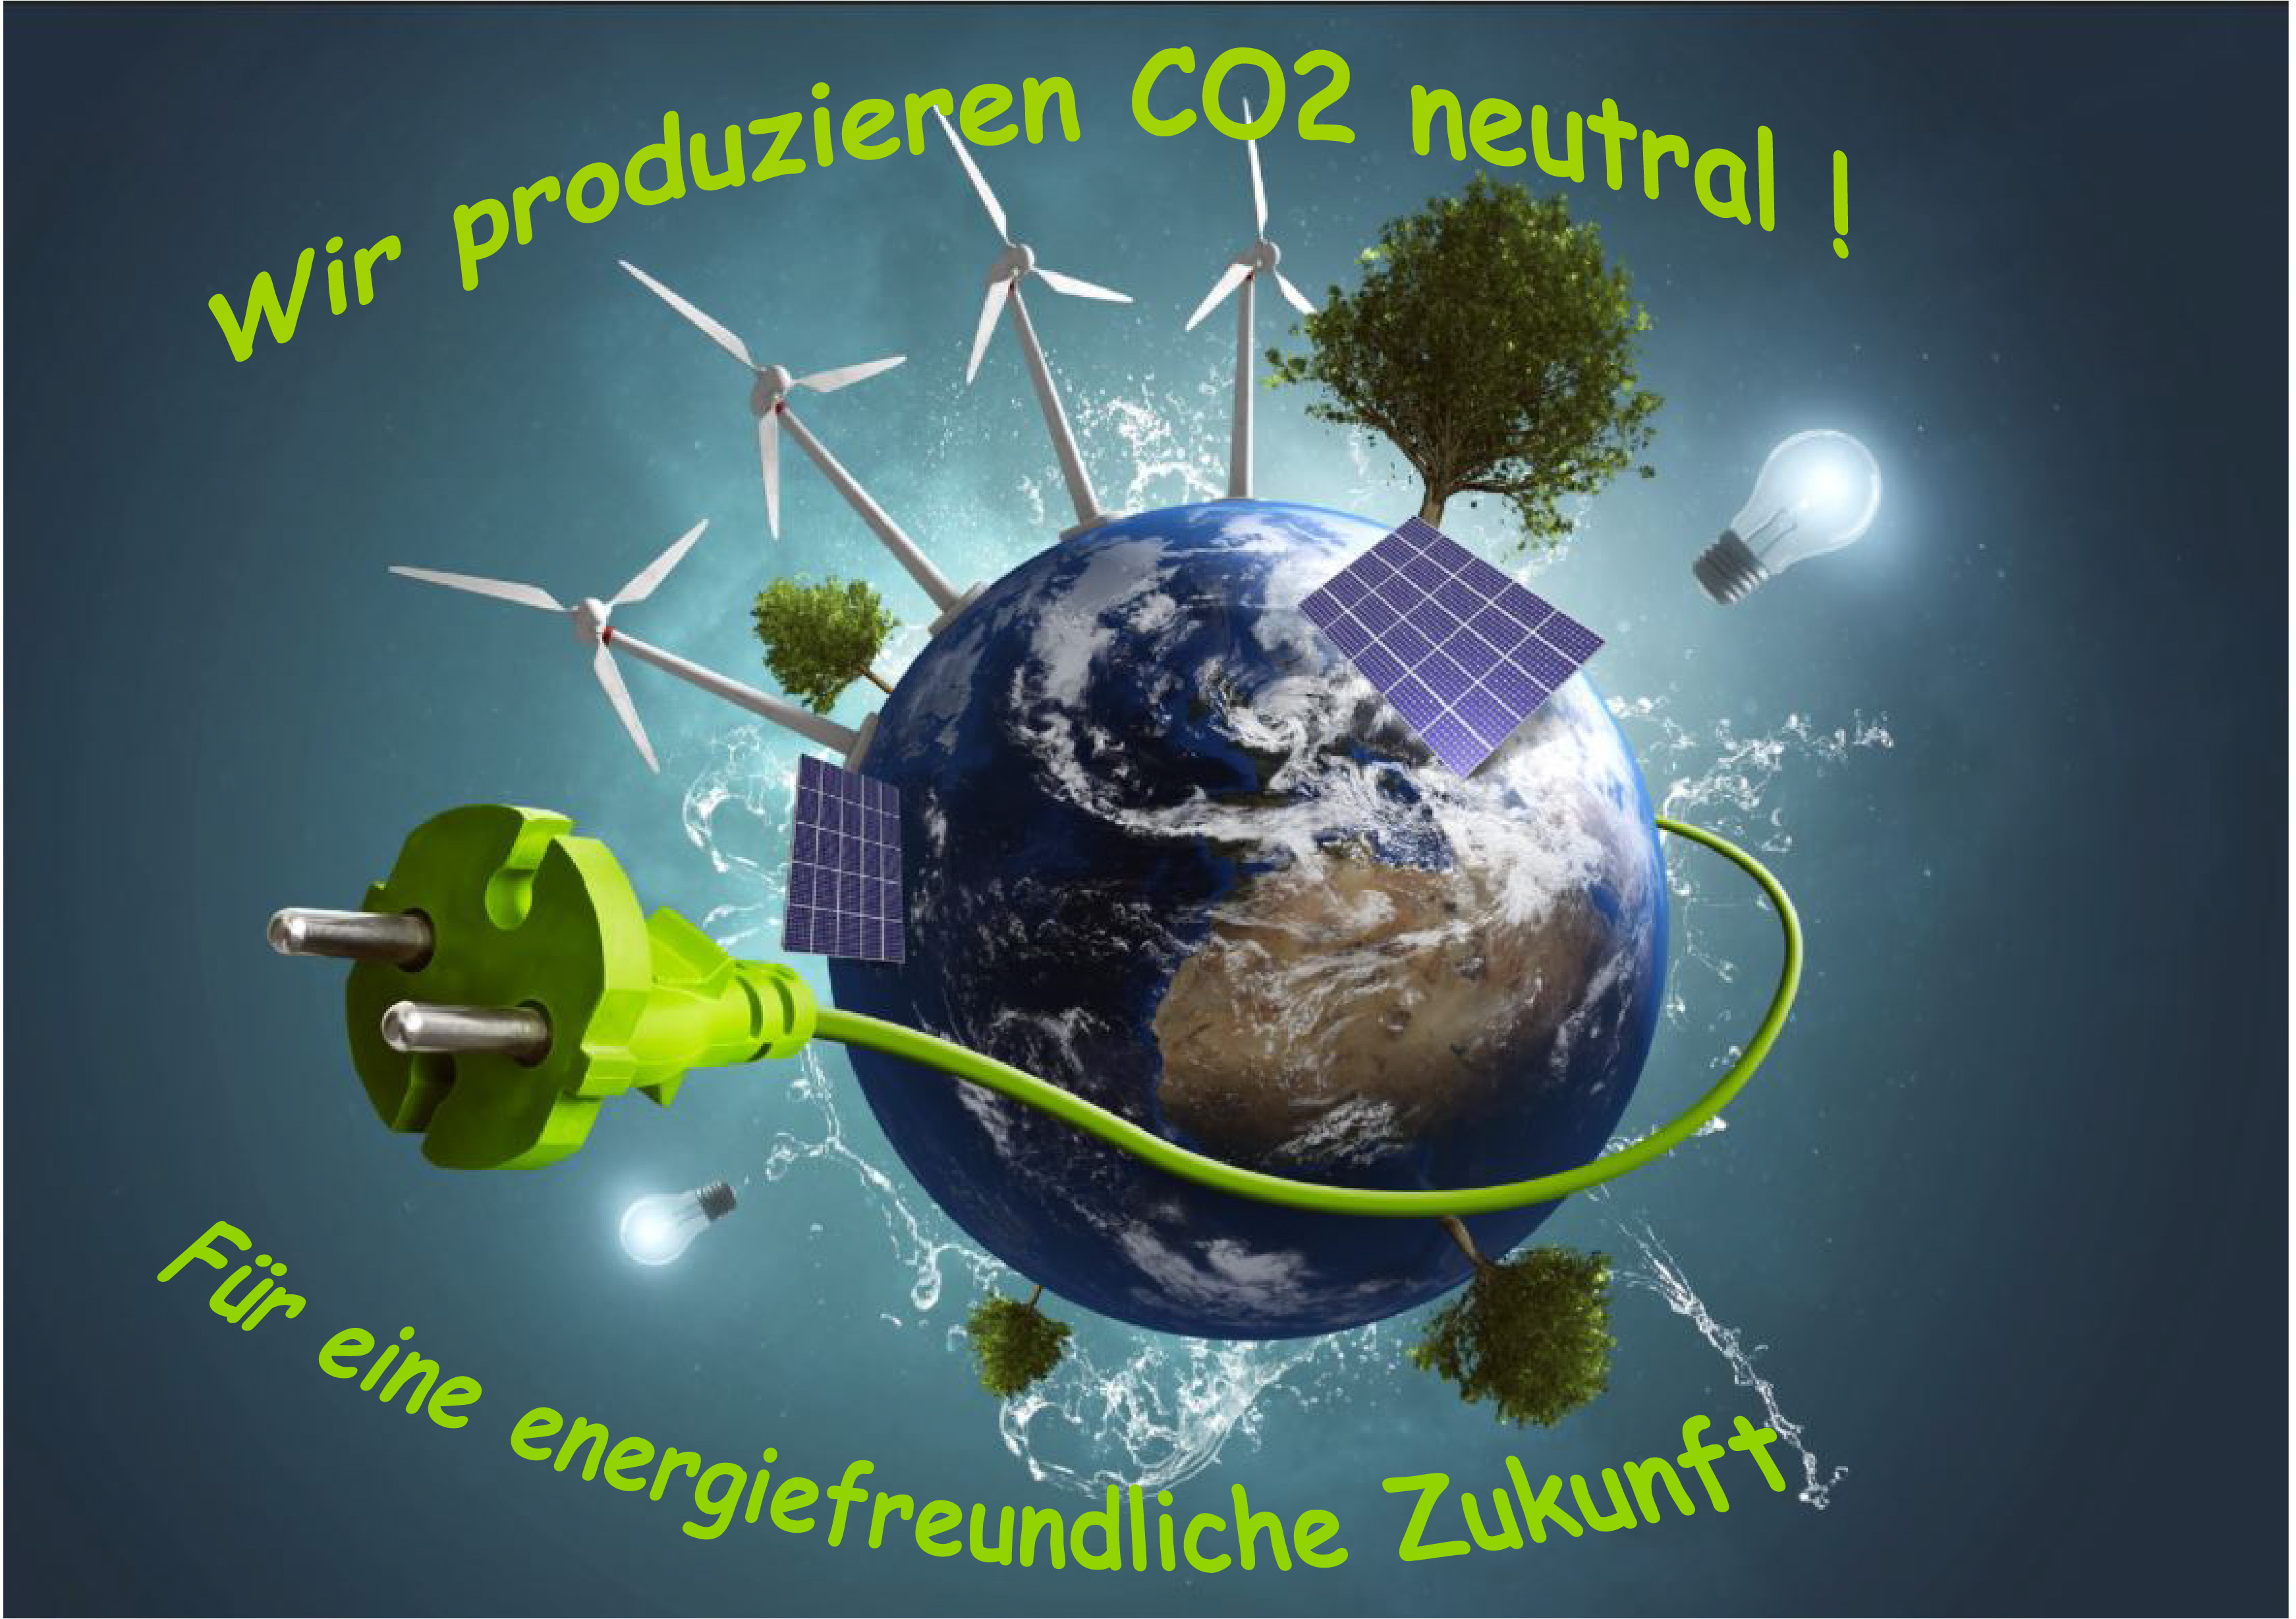 Wir Produzieren CO2 neutral, für eine Energiefreundliche Zukunft